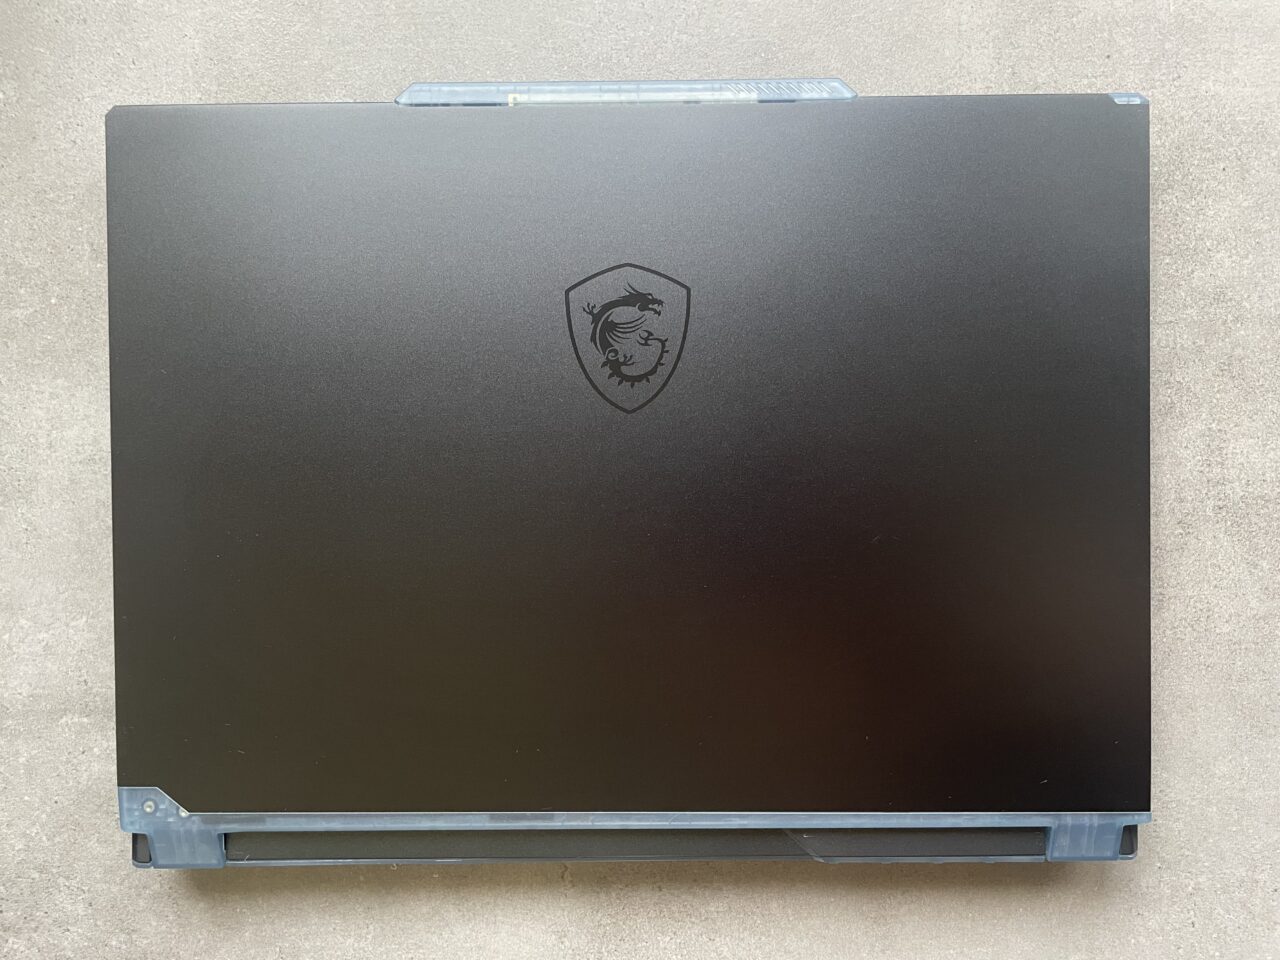 Czarny laptop gamingowy z zamkniętą pokrywą i widocznym logo w kształcie tarczy z głową lwa.